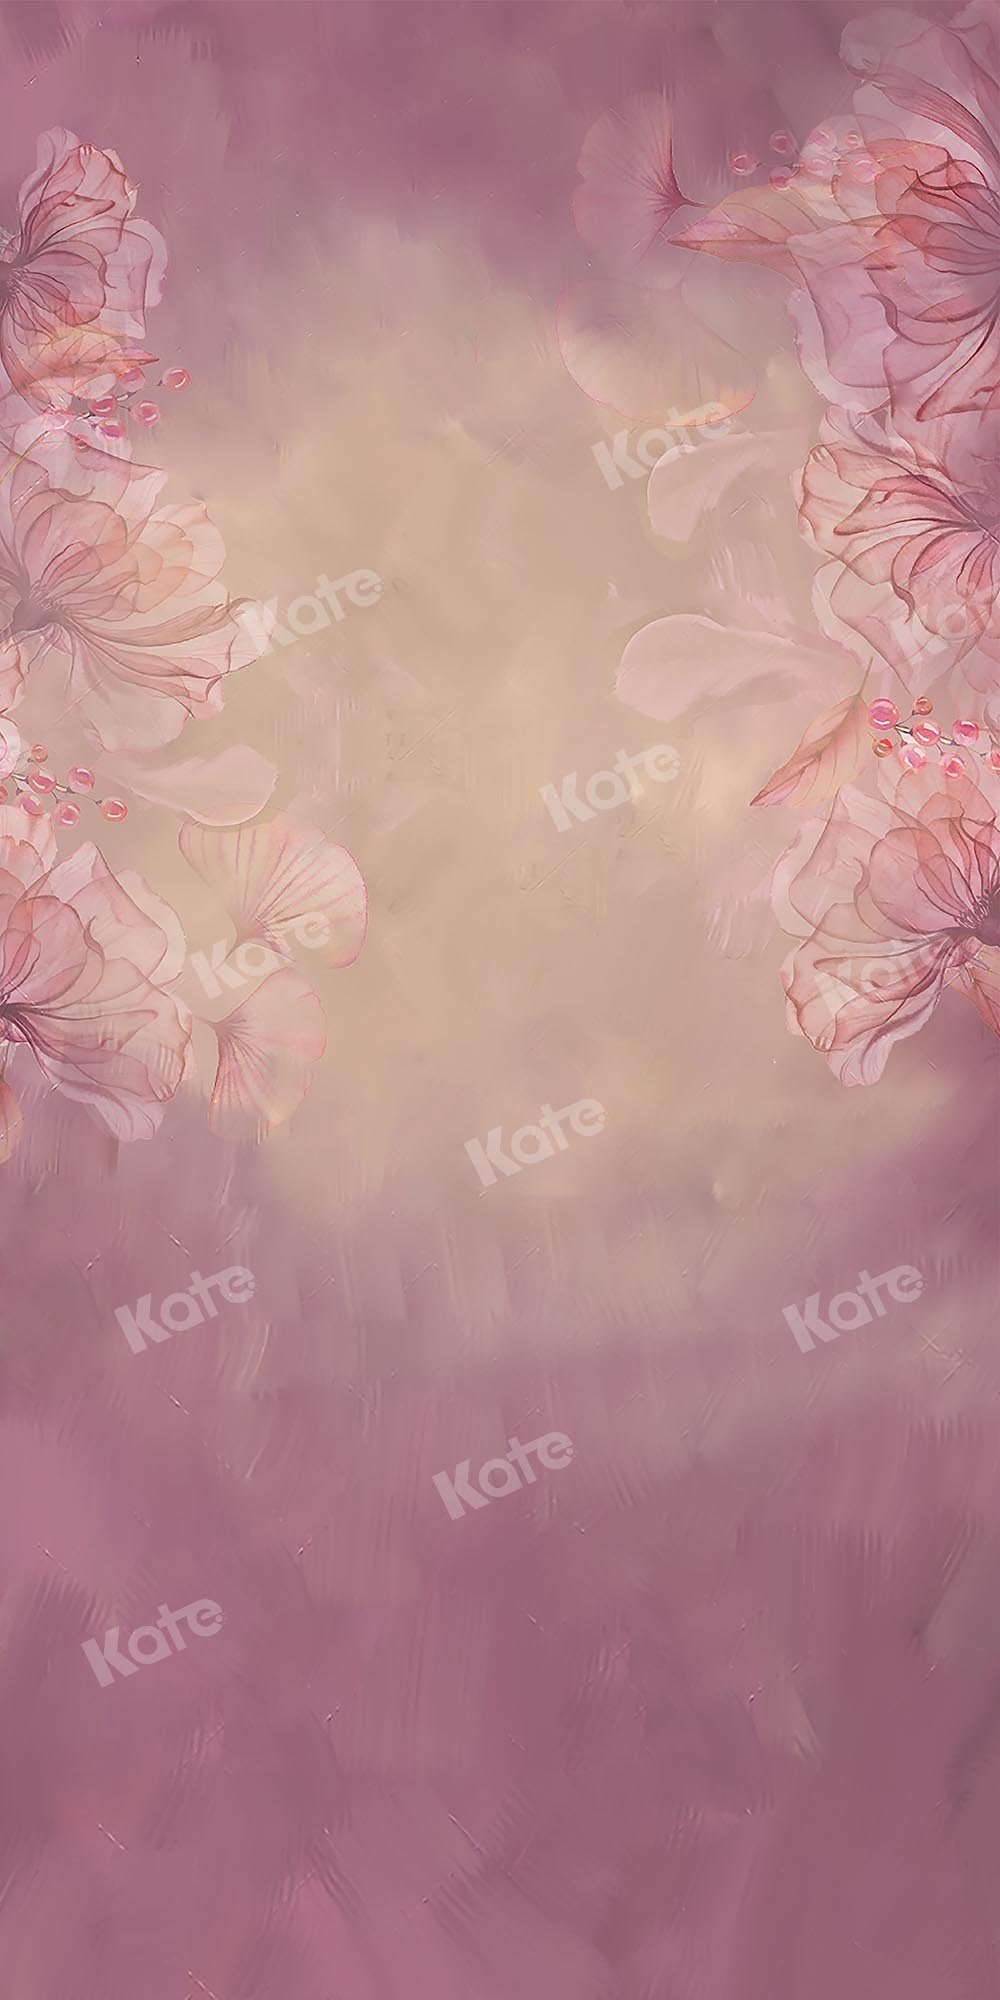 Kate balayage fine art Floral fond rose flou conçu par GQ